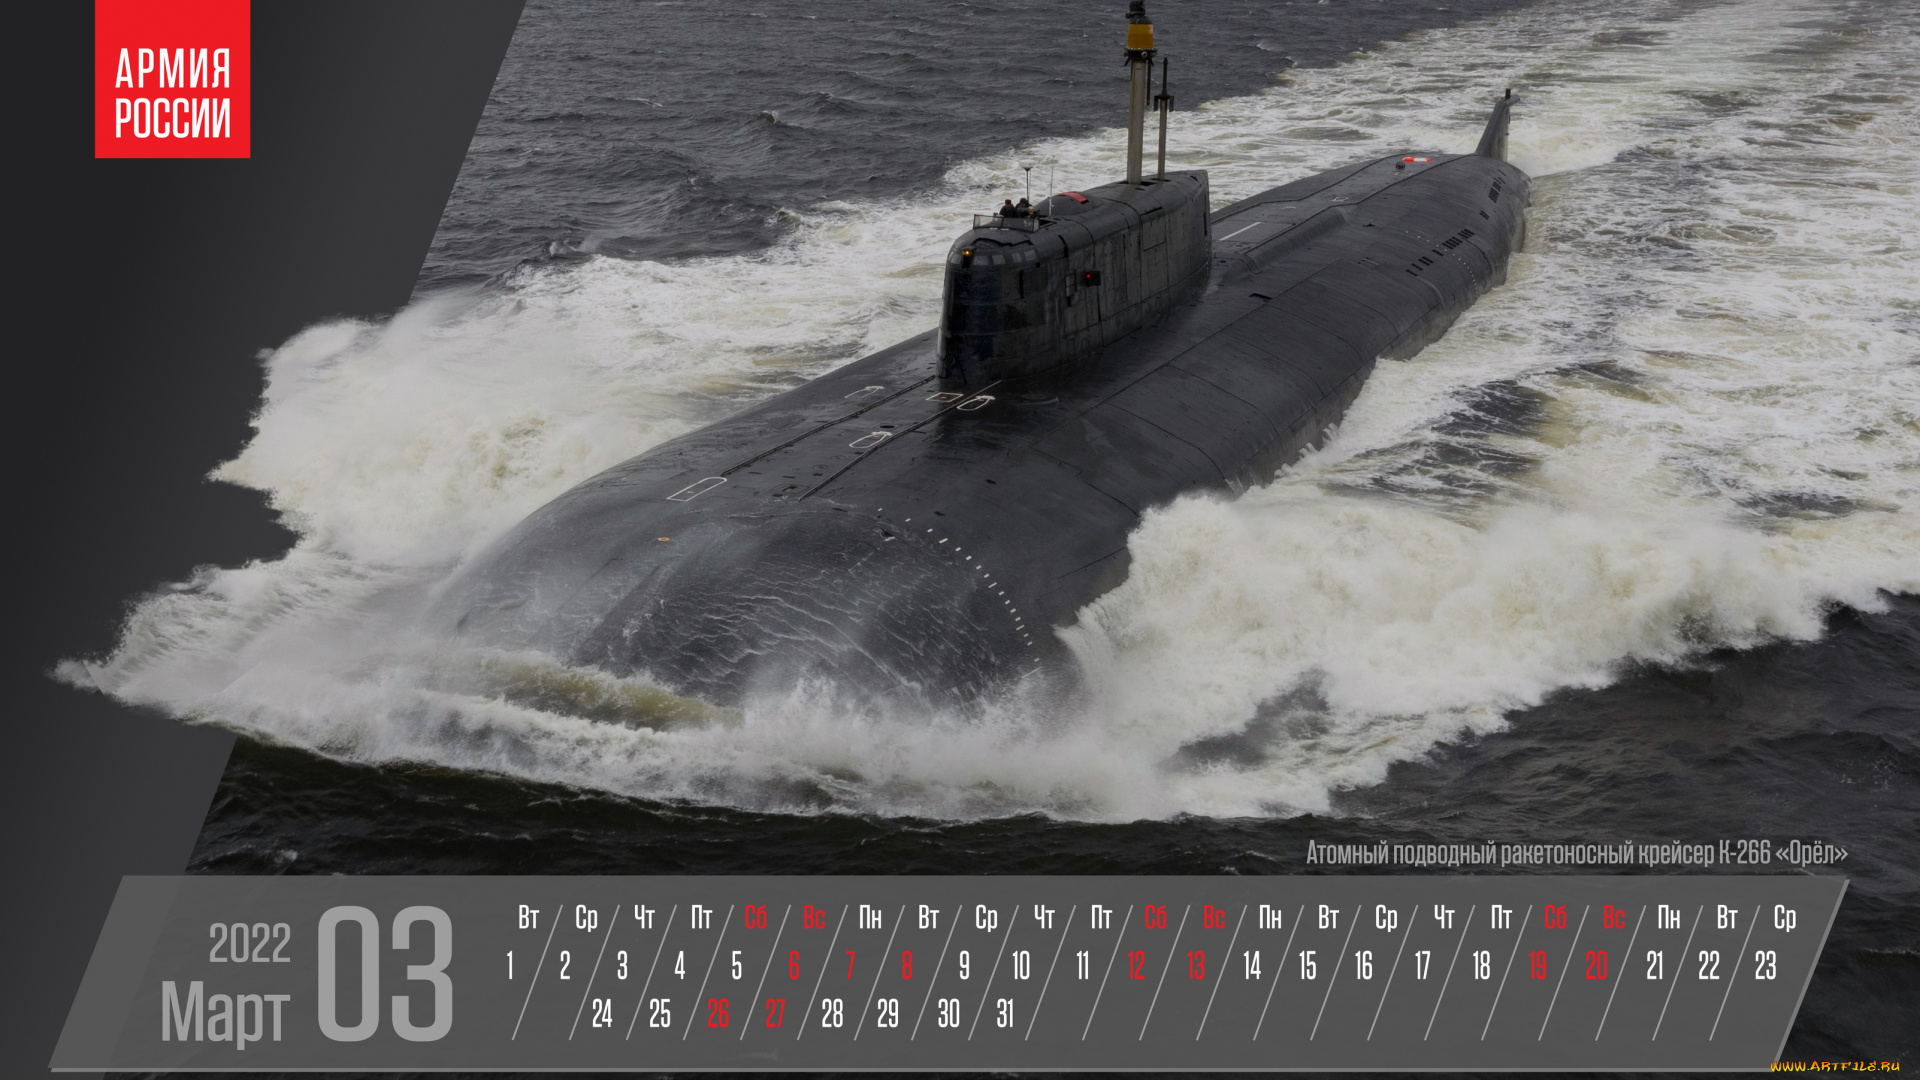 календари, техника, , корабли, март, календарь, атомный, подводный, ракетоносный, крейсер, к266, орел, минобороны, россии